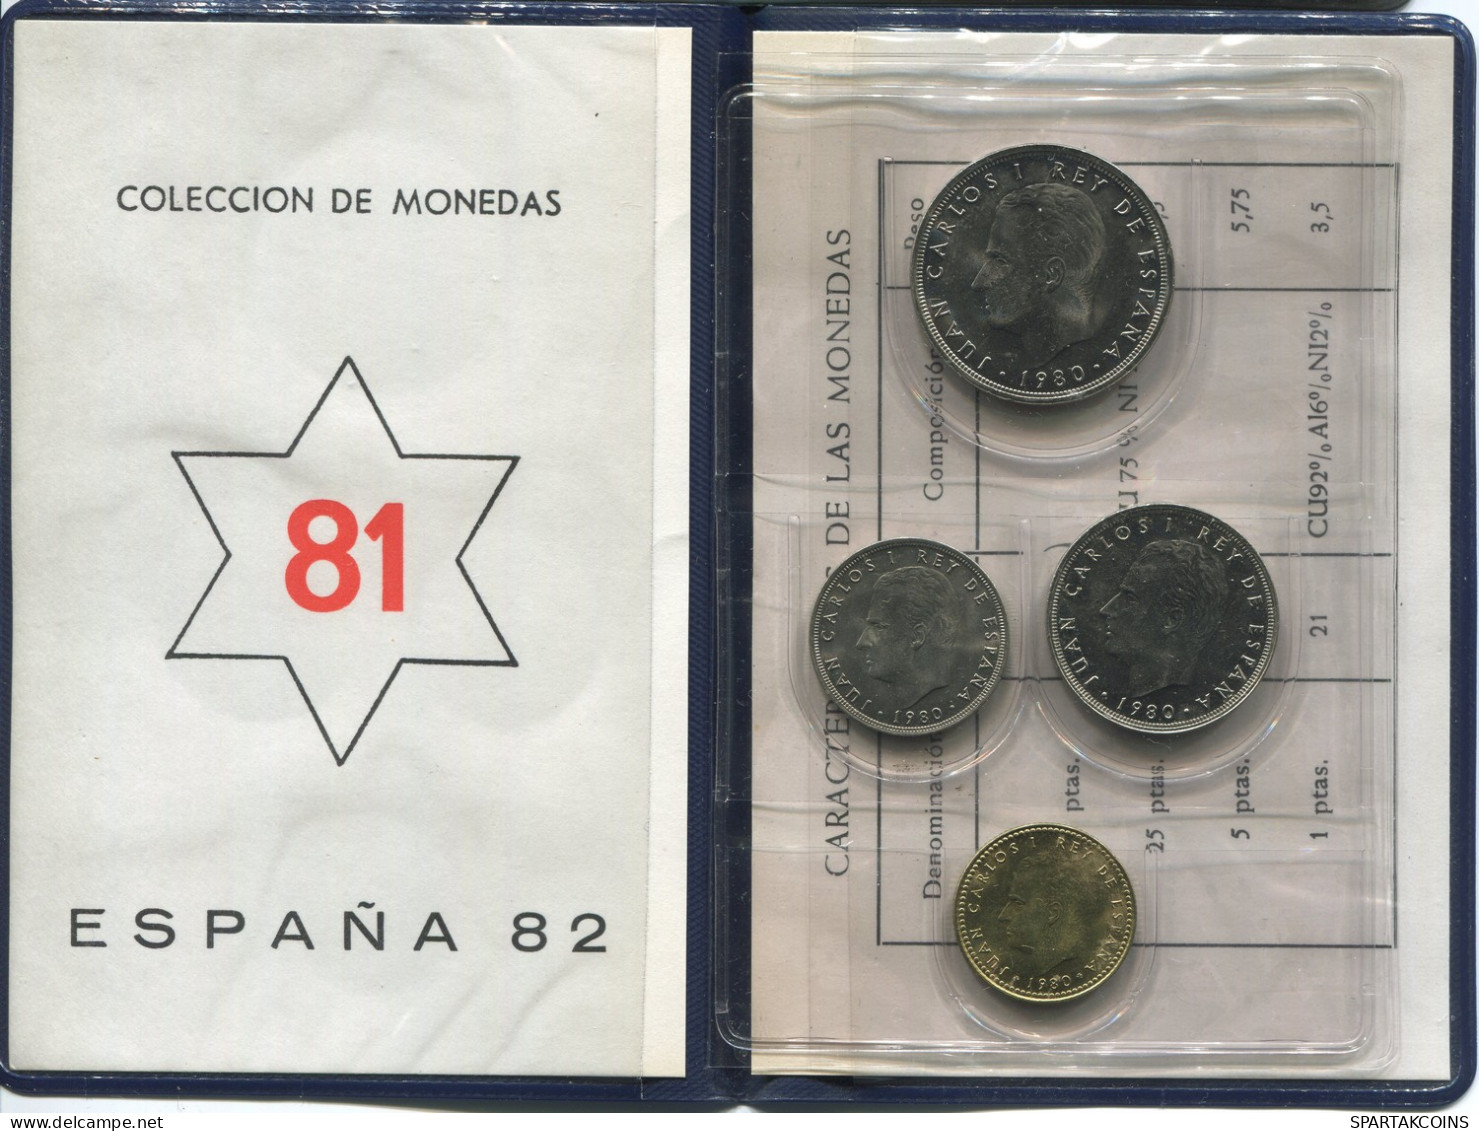 SPAIN 1981*81 Coin SET MUNDIAL*82 UNC #SET1259.4.U - Mint Sets & Proof Sets